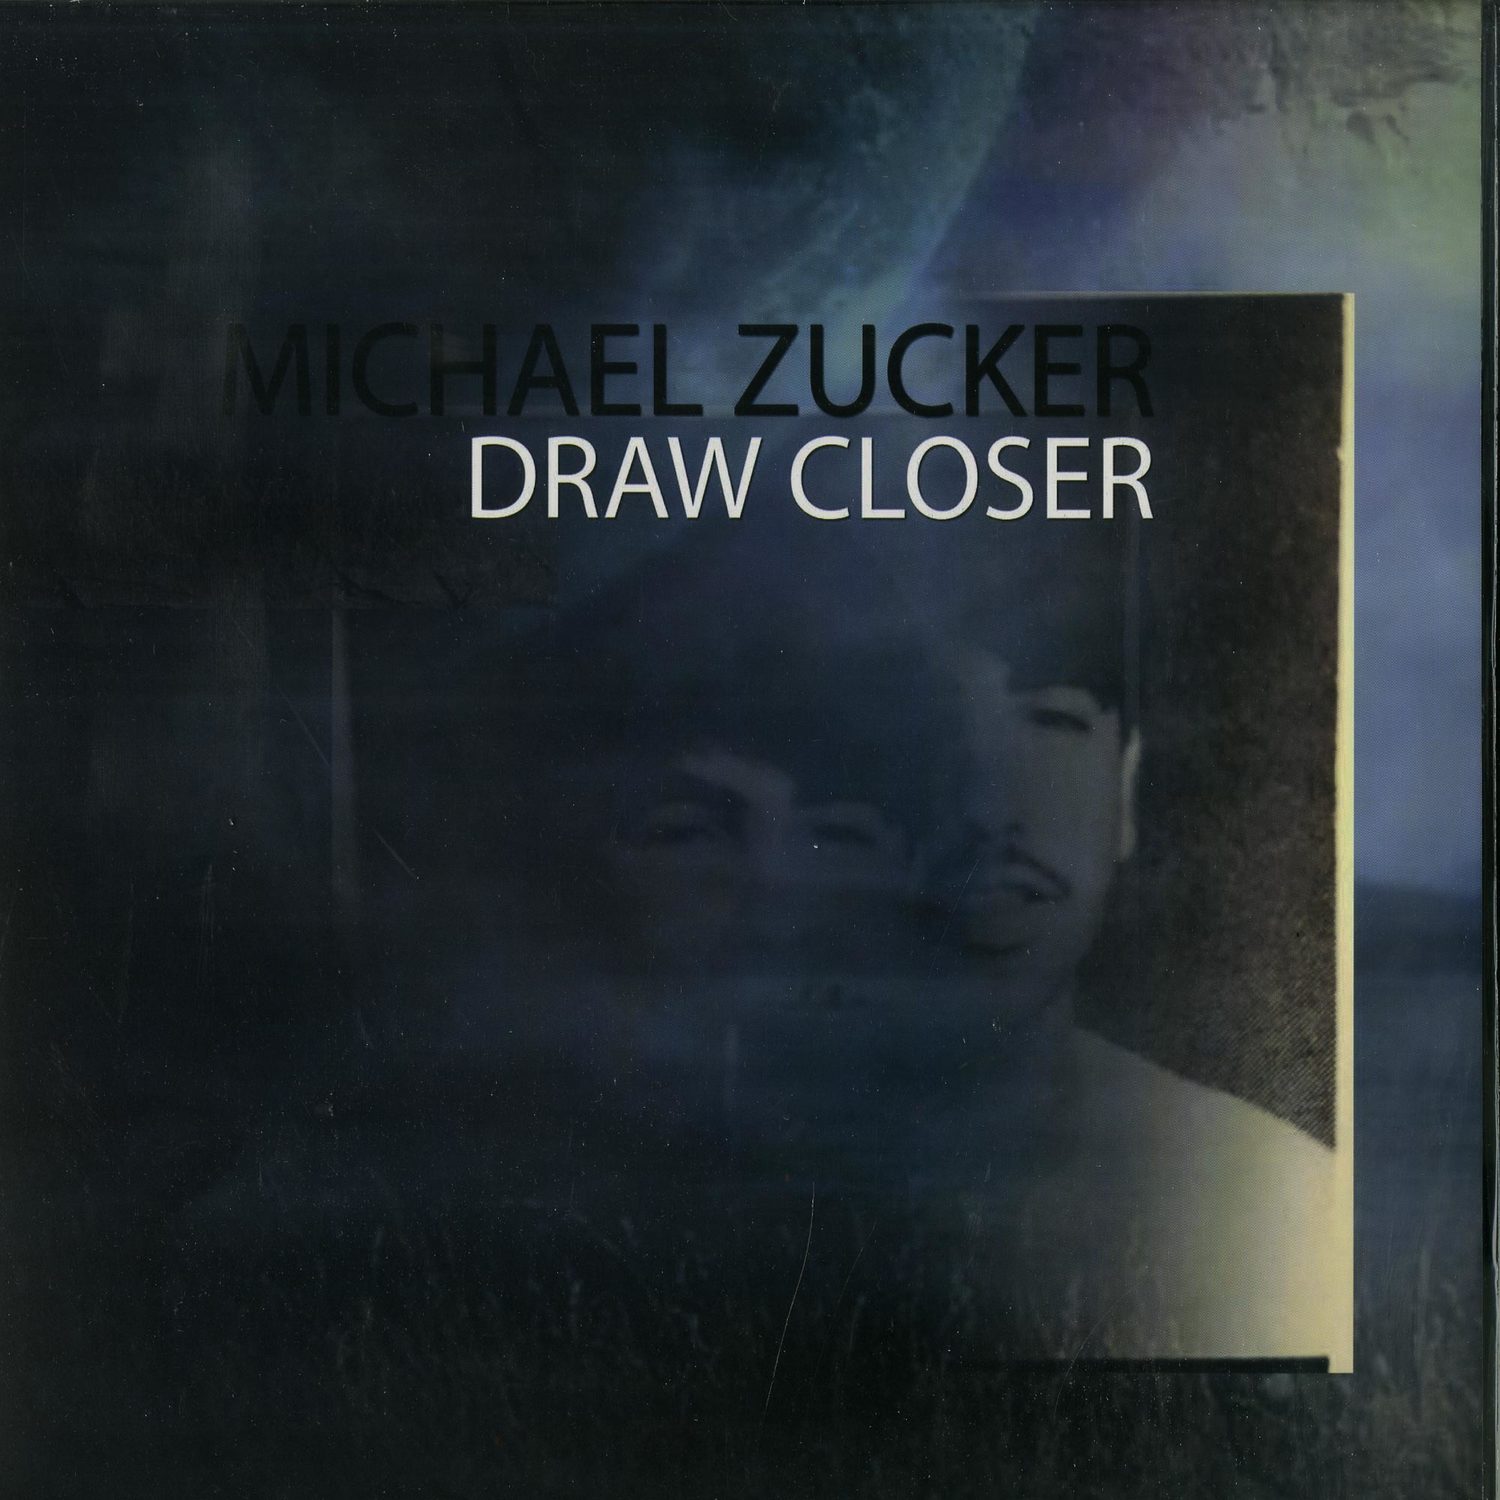 Michael Zucker - DRAW CLOSER 